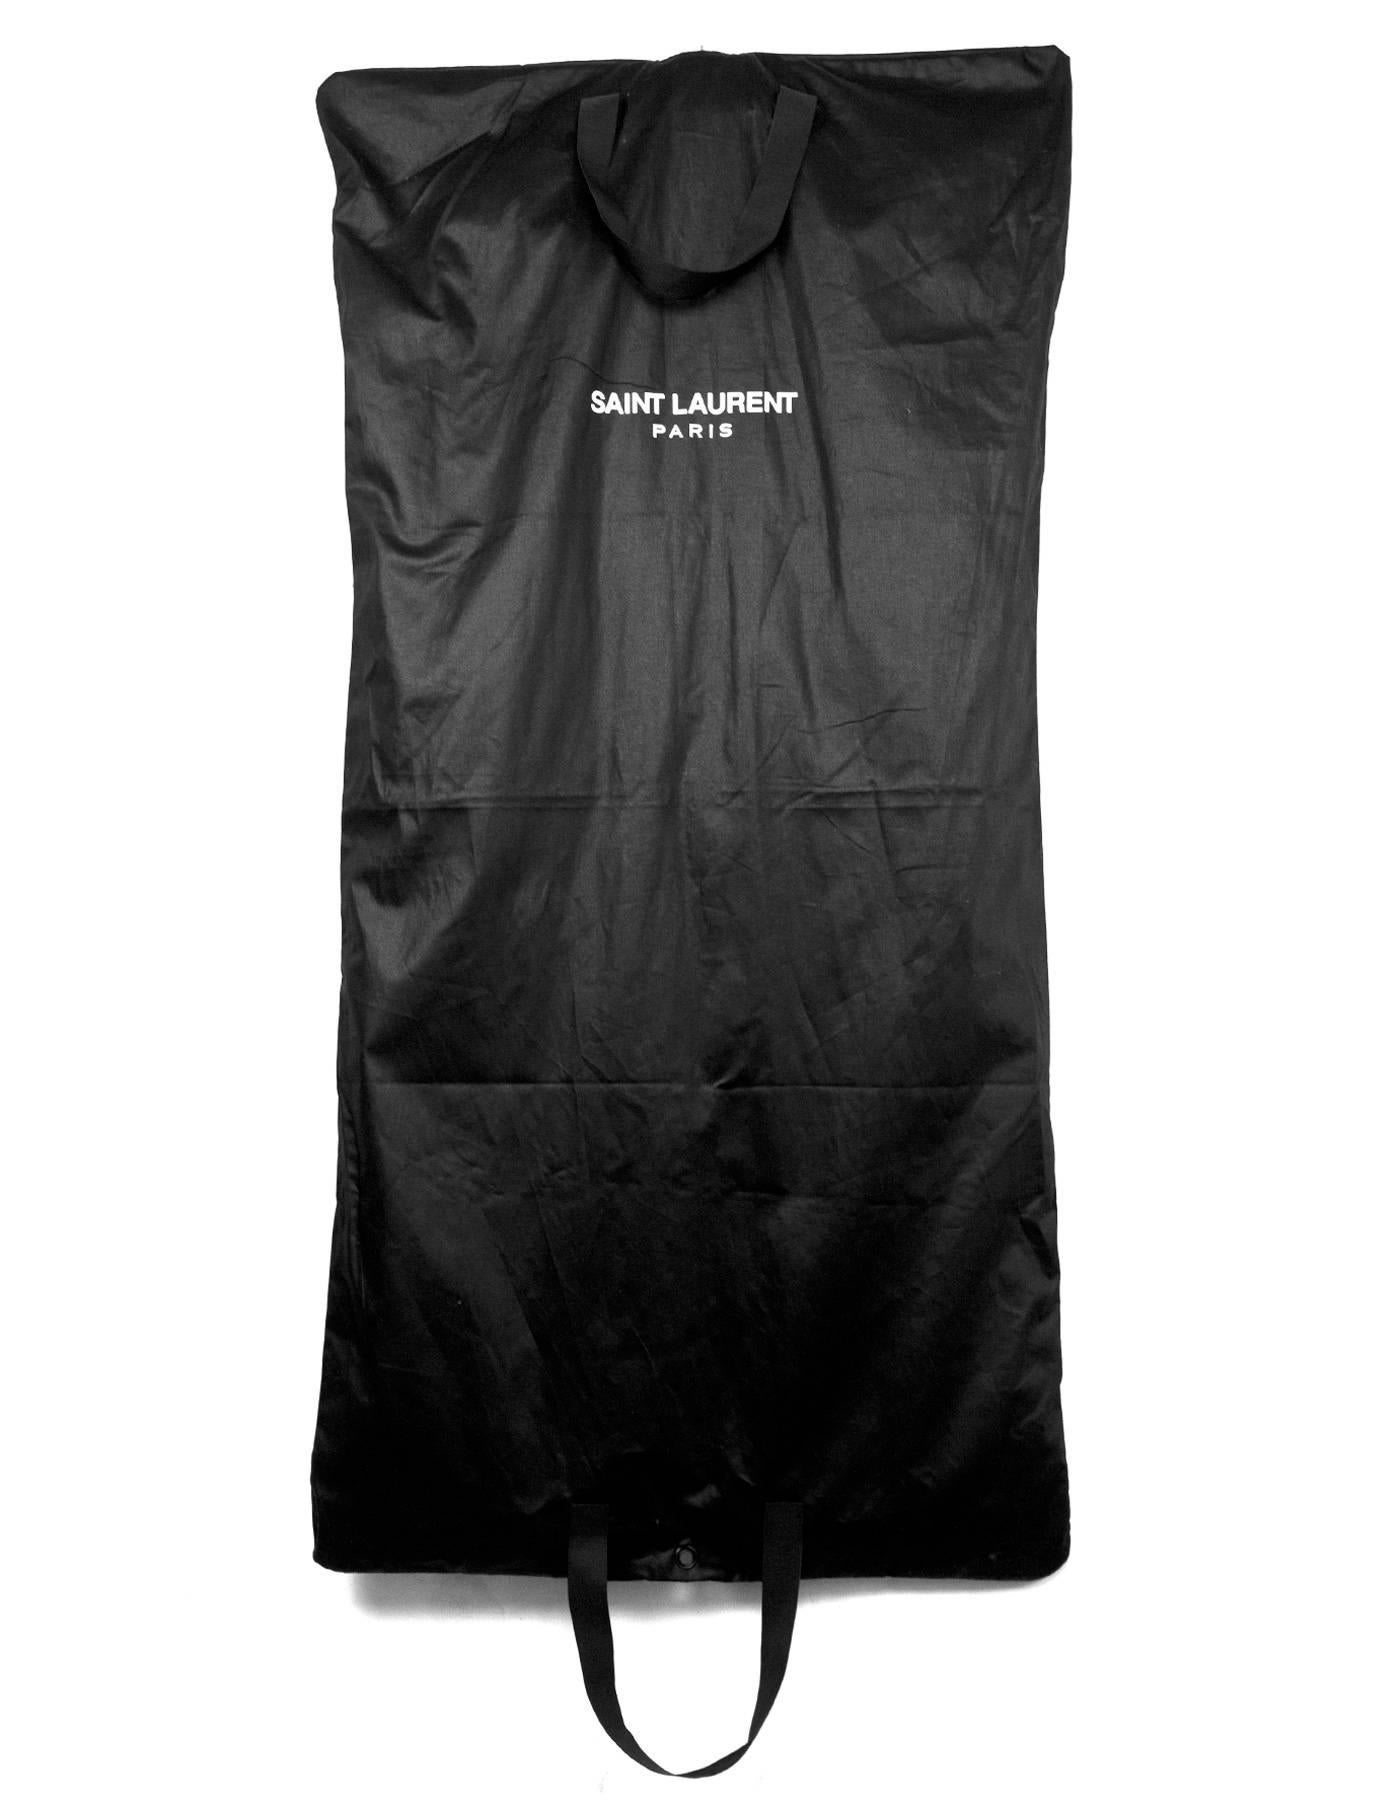 Saint Laurent Black Patent Effect Convertible Jacket/Vest sz FR44 1